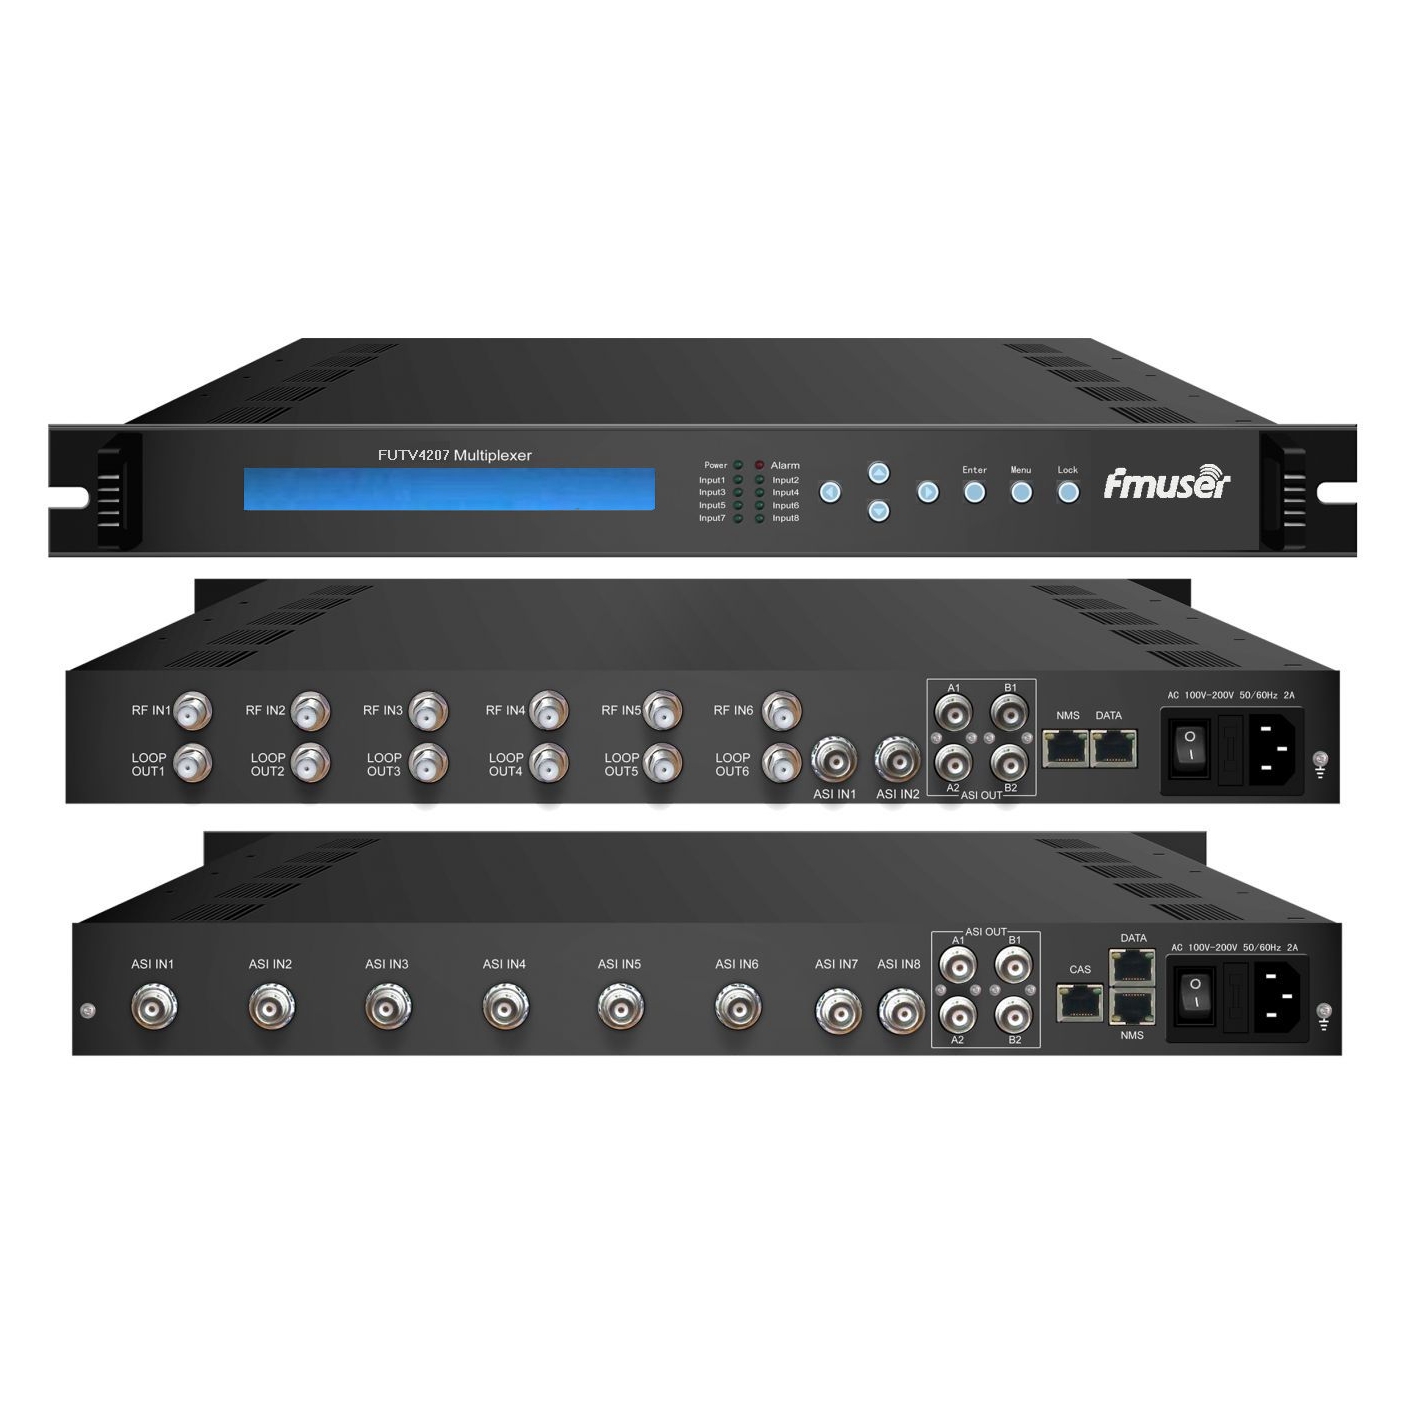 FMUSER FUTV4207X series Sintonizador 6 IRD (2 ASI + 6 DVB-C / DVB-S / DVB-S2 / DVB-T / ISDB / ATSC 8VSB Entrada RF, 8 ASI In, 2 ASI IP Output) Multiplexor